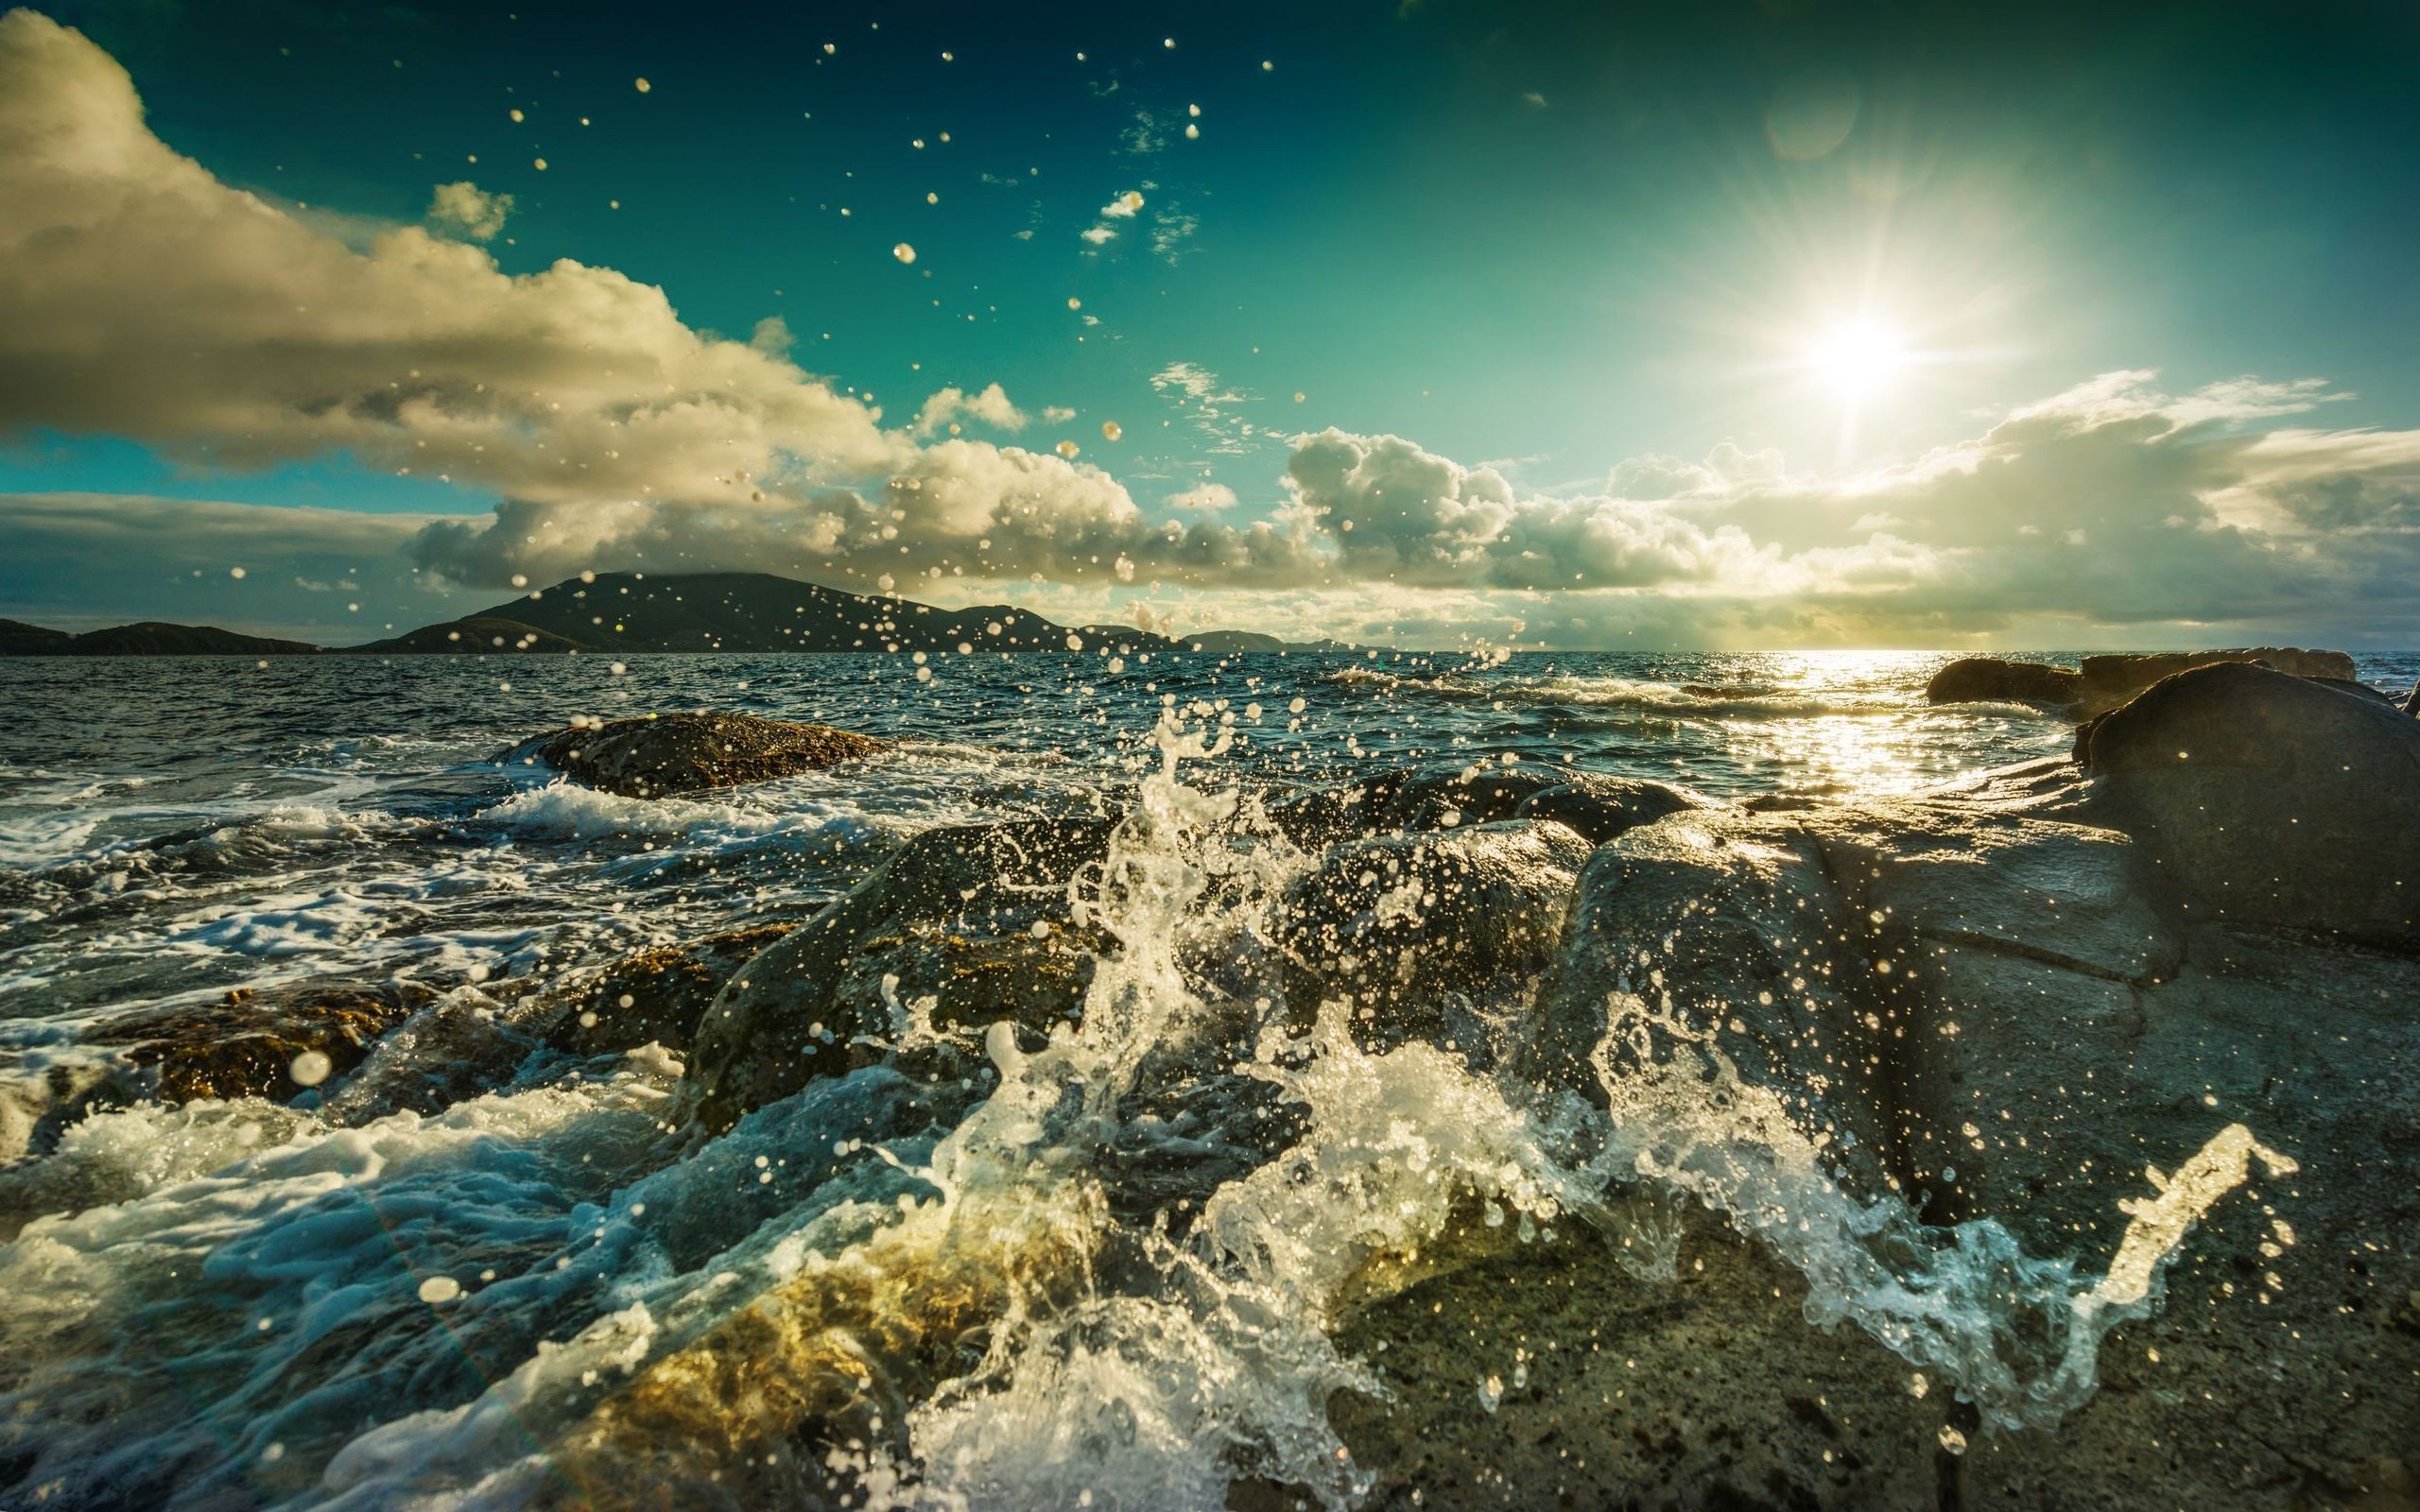 Фото моря в хорошем качестве на заставку телефона бесплатно